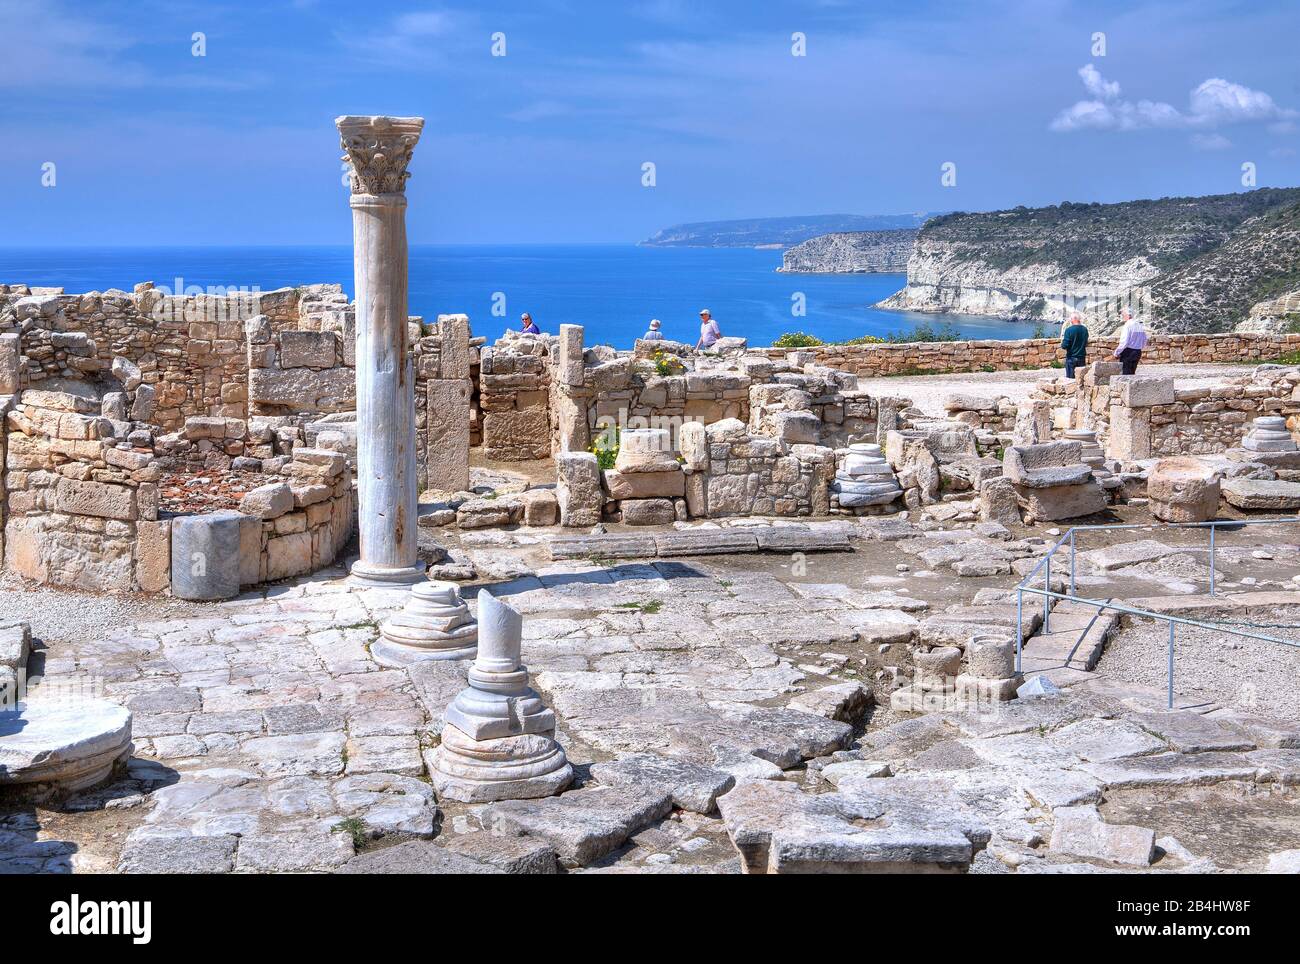 Agora sopra la scogliera nel sito archeologico antico Kourion vicino a Limassol, costa mediterranea, Cipro Foto Stock